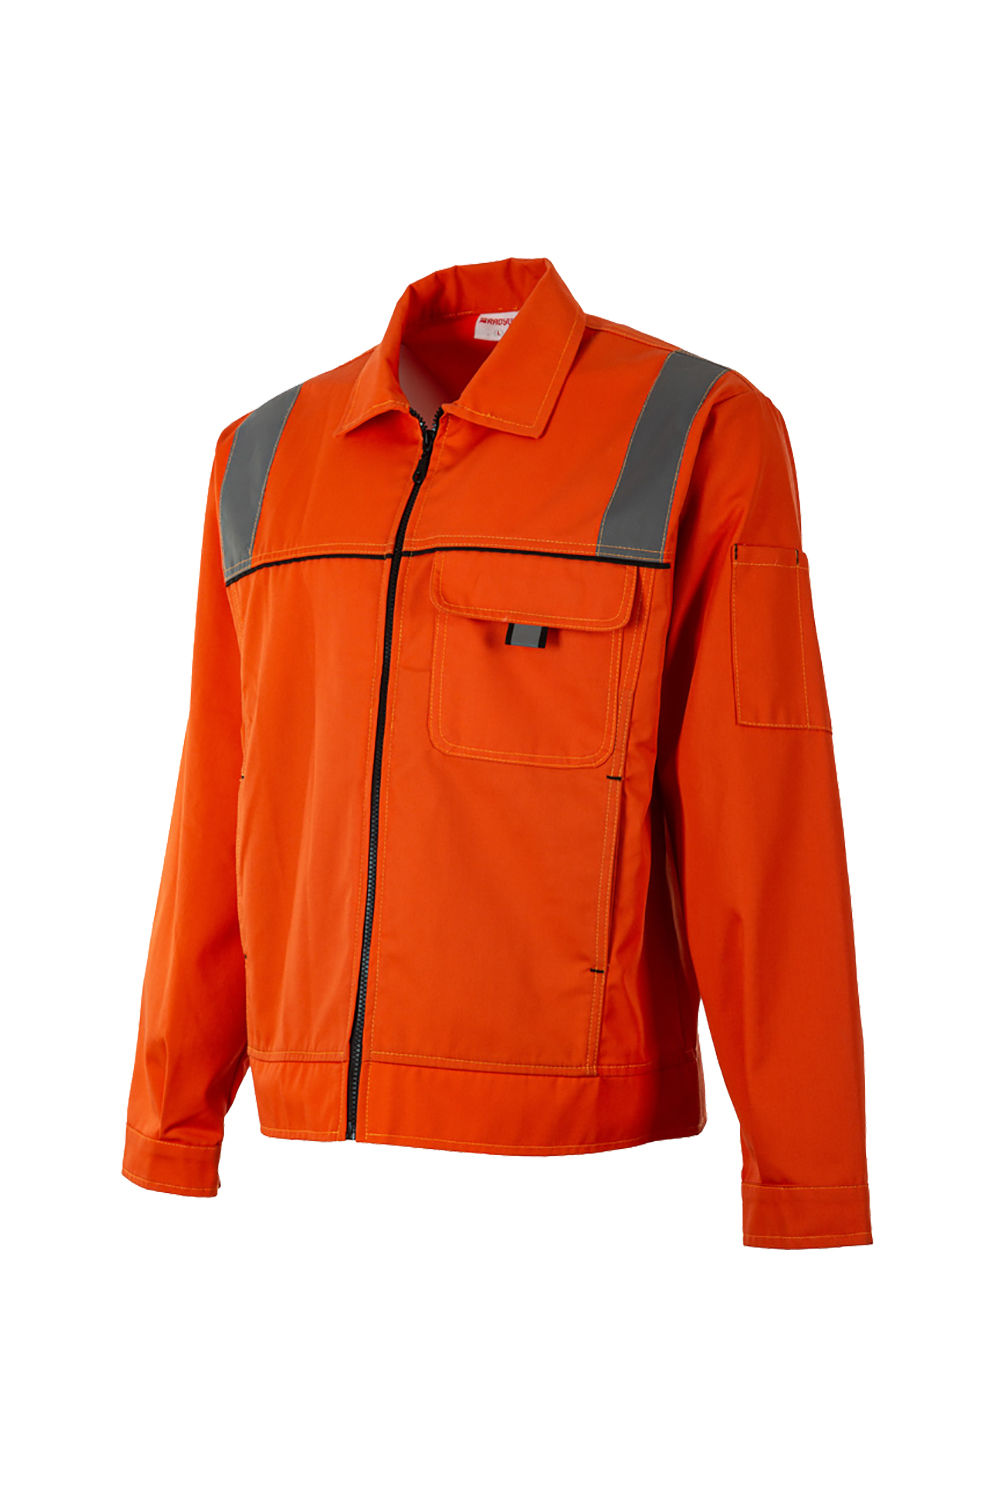 Work Jacket / Work Jackets / Workwear